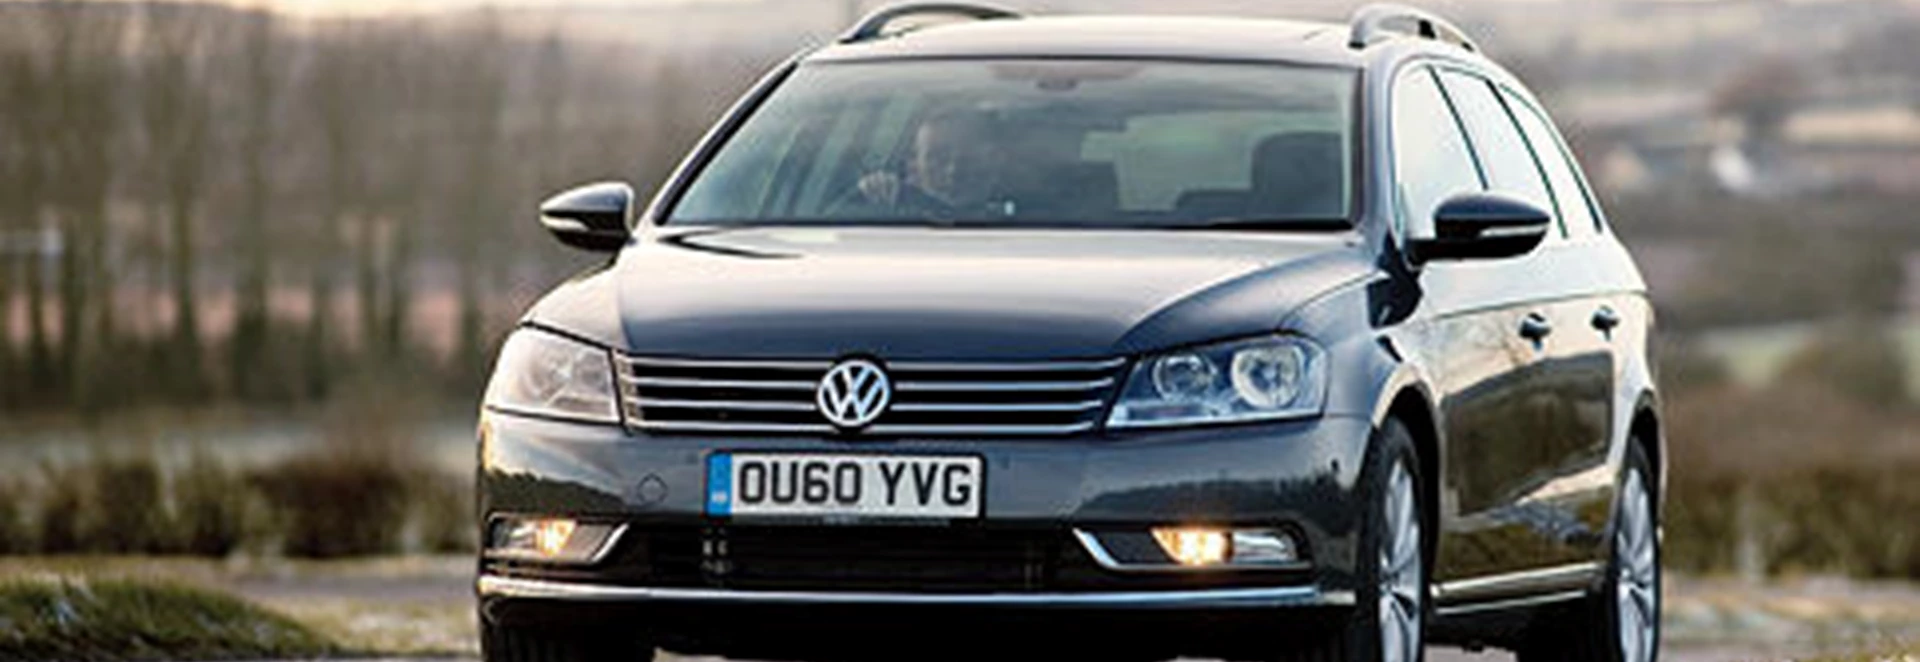 Volkswagen Passat Estate 2.0 TDI SE BlueMotion Technology (2011) 